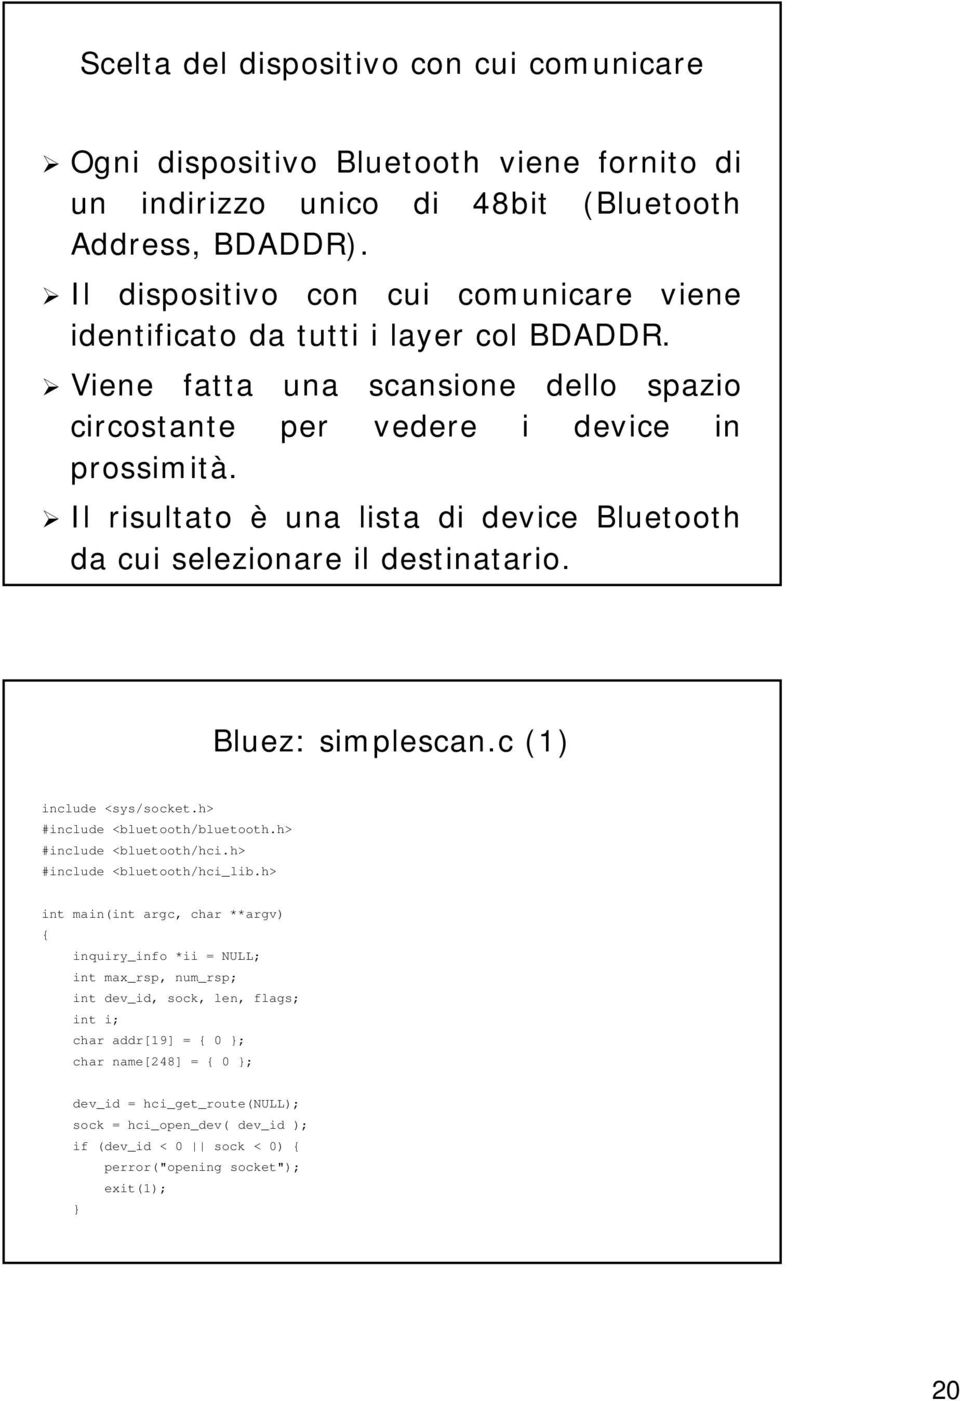 Il risultato è una lista di device Bluetooth da cui selezionare il destinatario. Bluez: simplescan.c (1) include <sys/socket.h socket.h> #include <bluetooth/bluetooth.h< bluetooth/bluetooth.